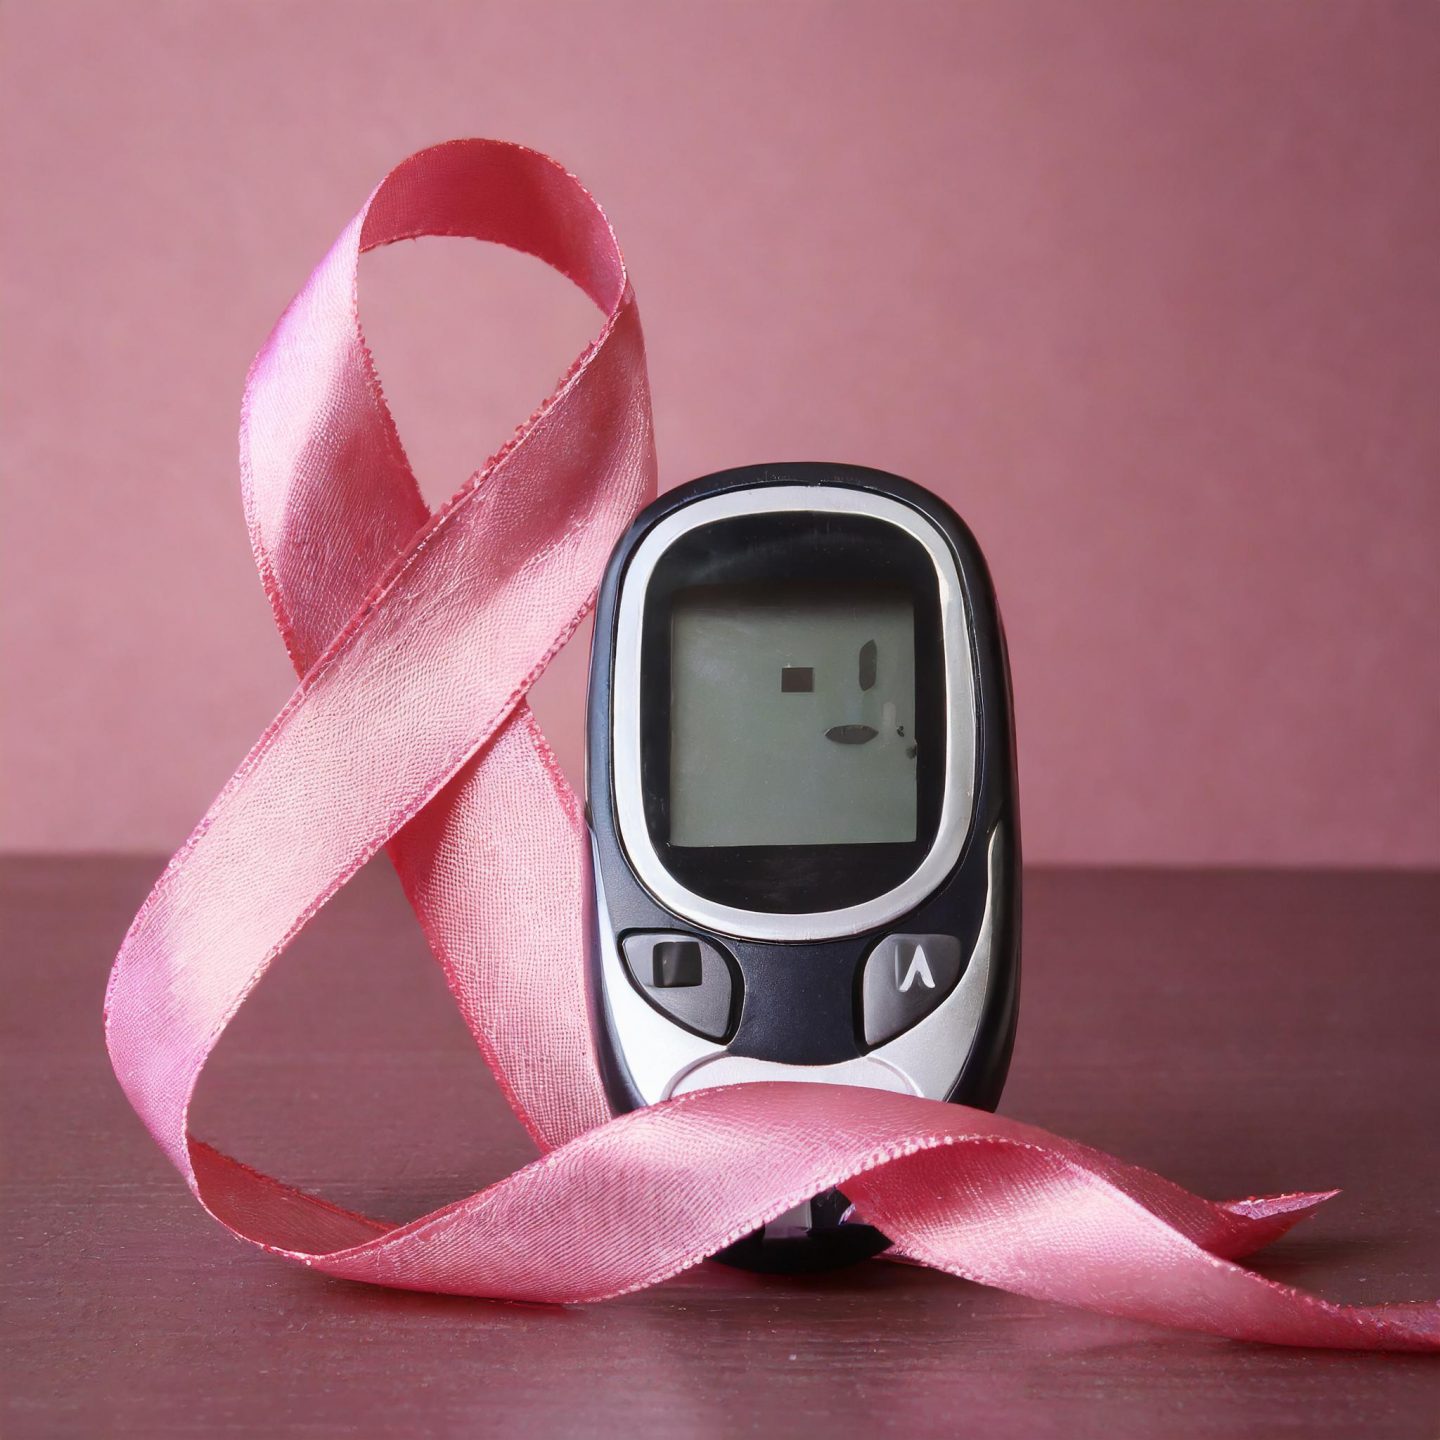 Das Risiko für die Entstehung eines Typ-2-Diabetes steigt für Frauen, die eine Antihormontherapie praktizieren. Foto: Maschinell erstellt mit Firefly